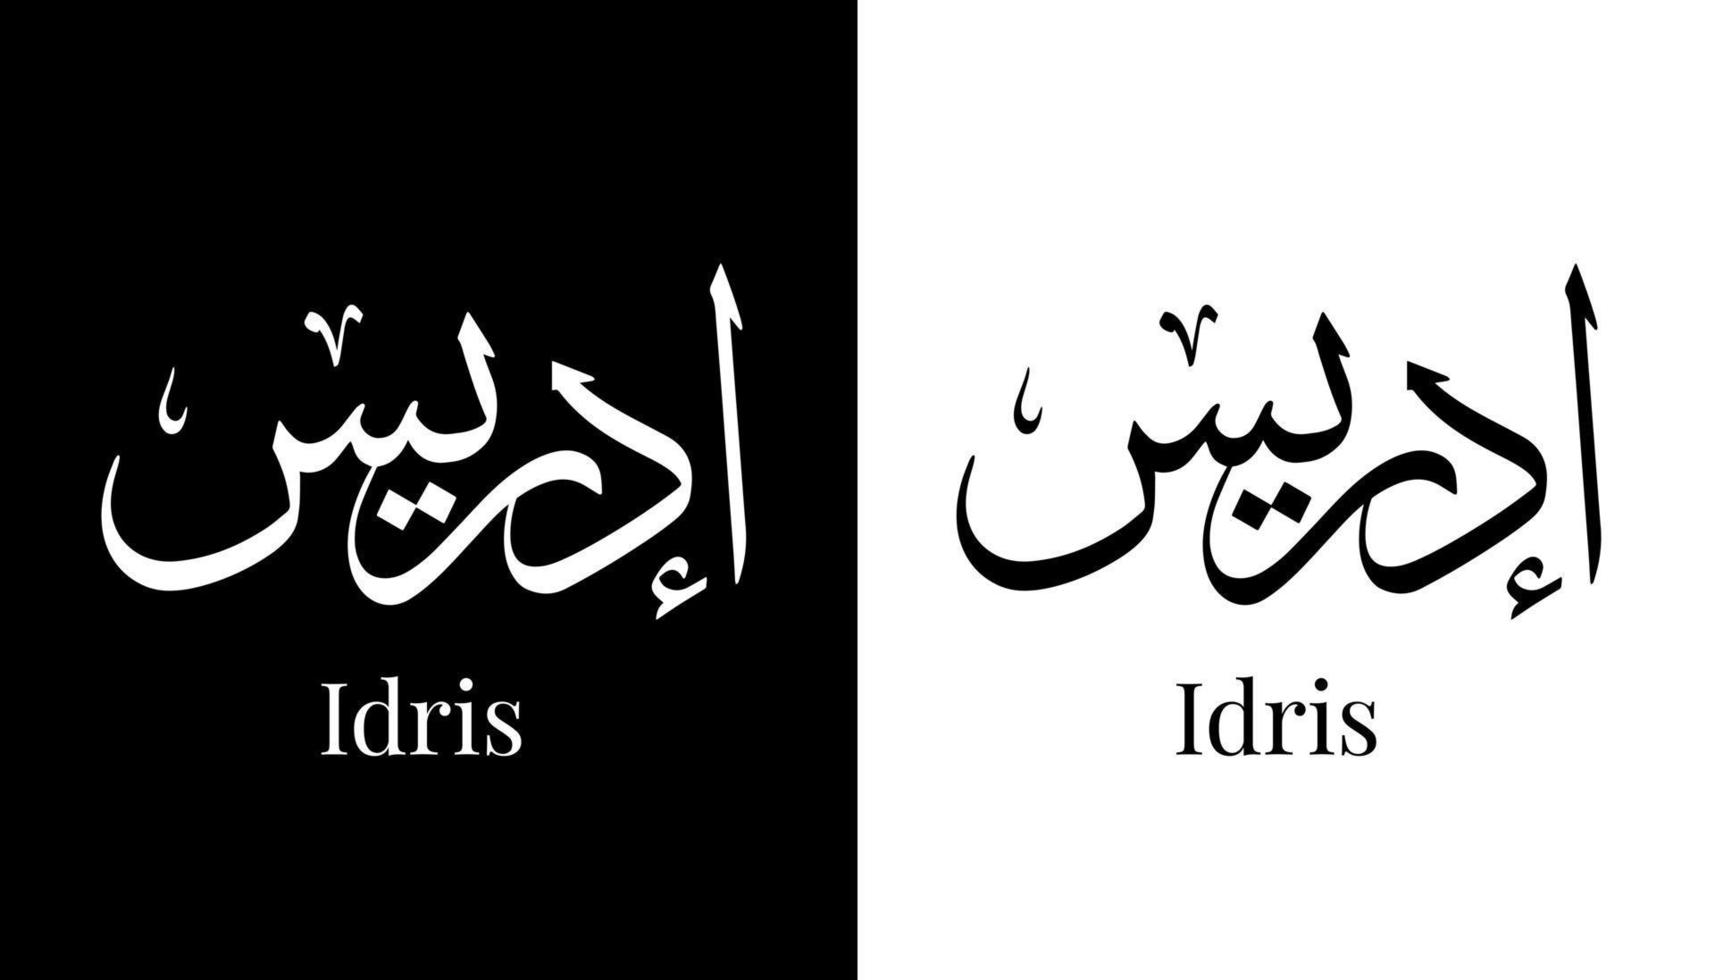 nome della calligrafia araba tradotto 'idris' lettere arabe alfabeto font lettering logo islamico illustrazione vettoriale